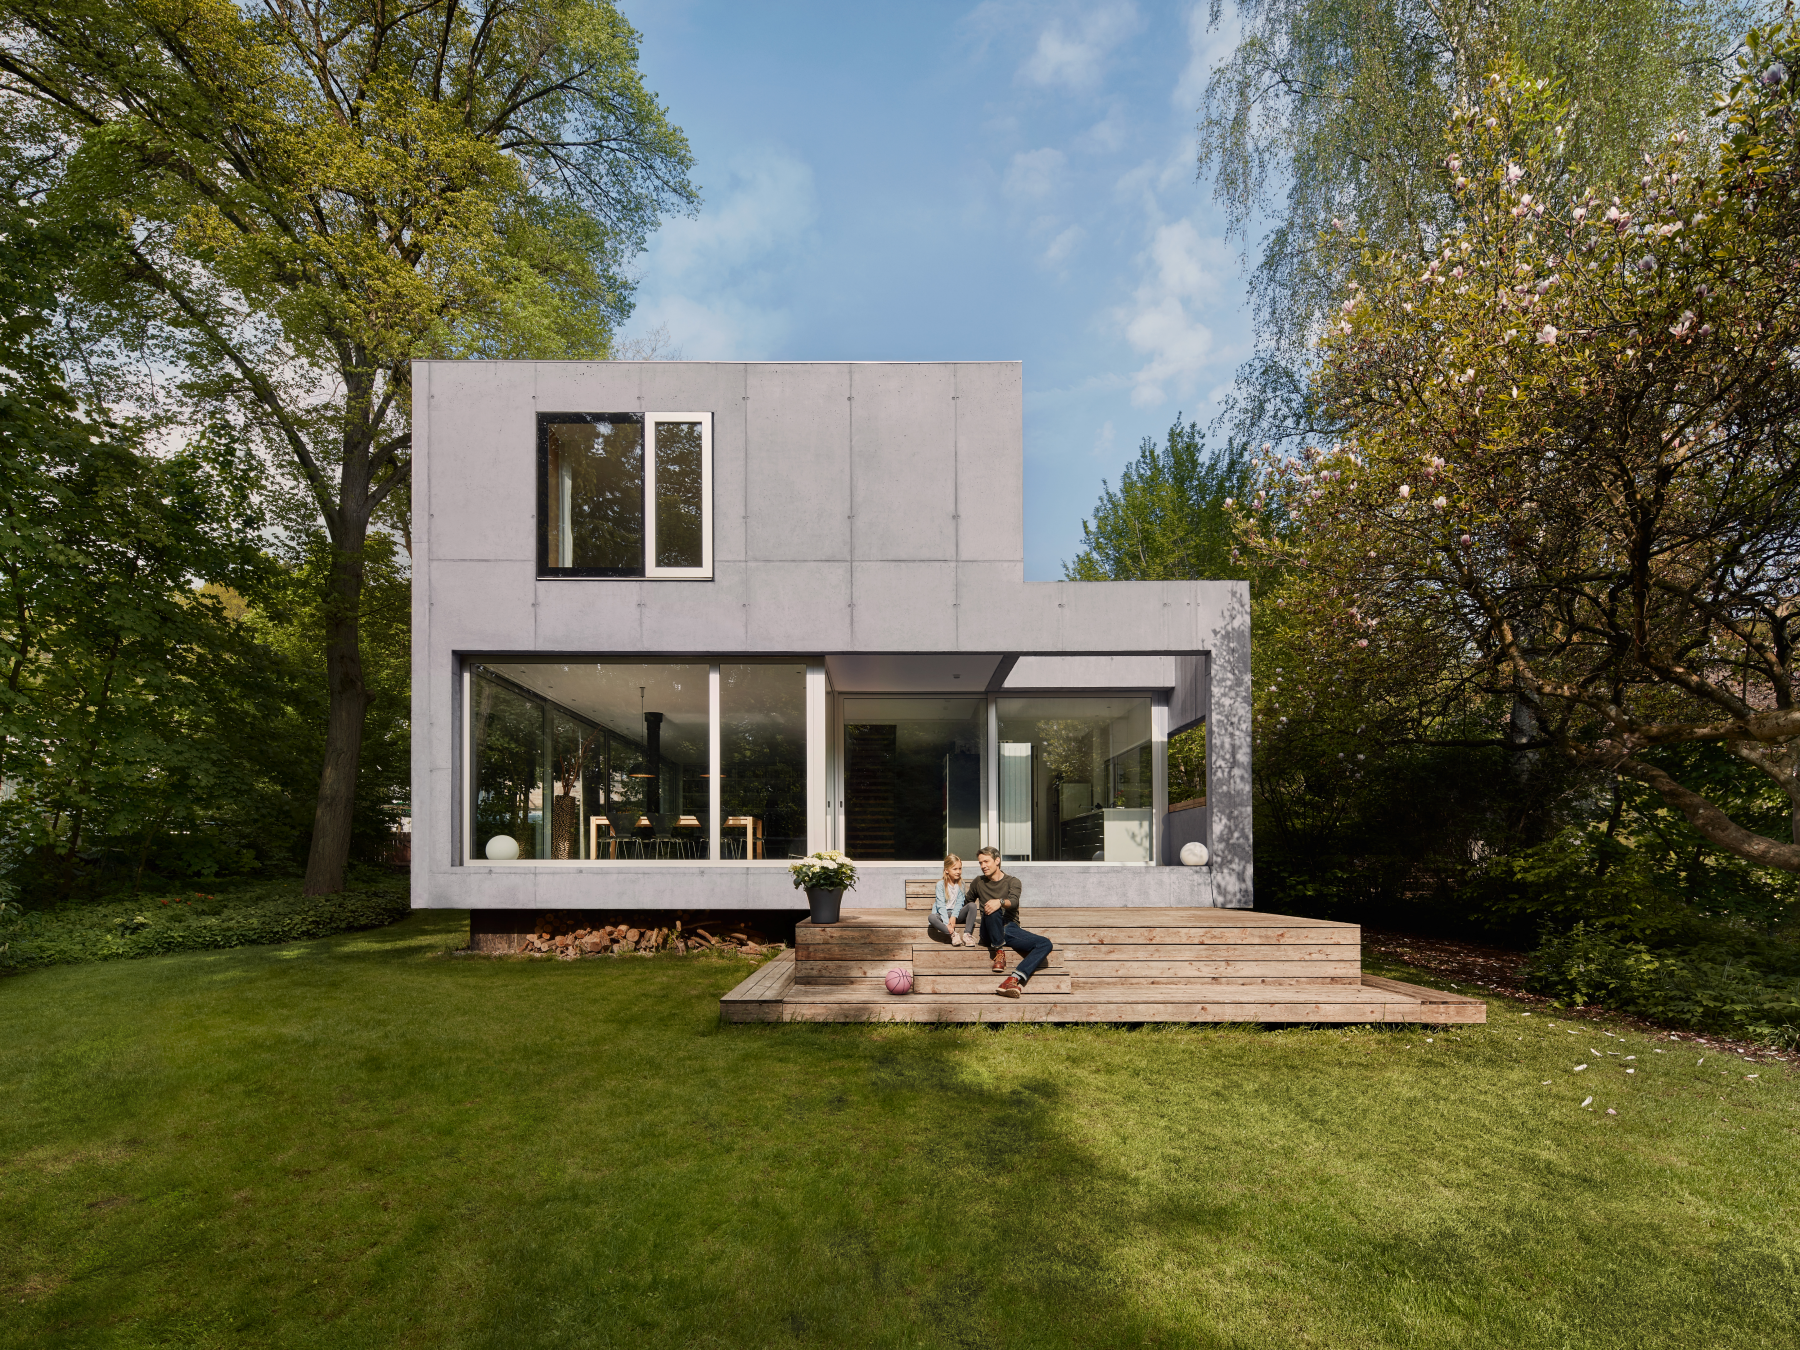 Einfamilienhaus mit Sichtbetonfassade und Glasfront, umgeben von Bäumen und gesäumt von einer Grasfläche. Auf den Stufen vor dem Haus sitzen eine erwachsene Person und ein Kind.